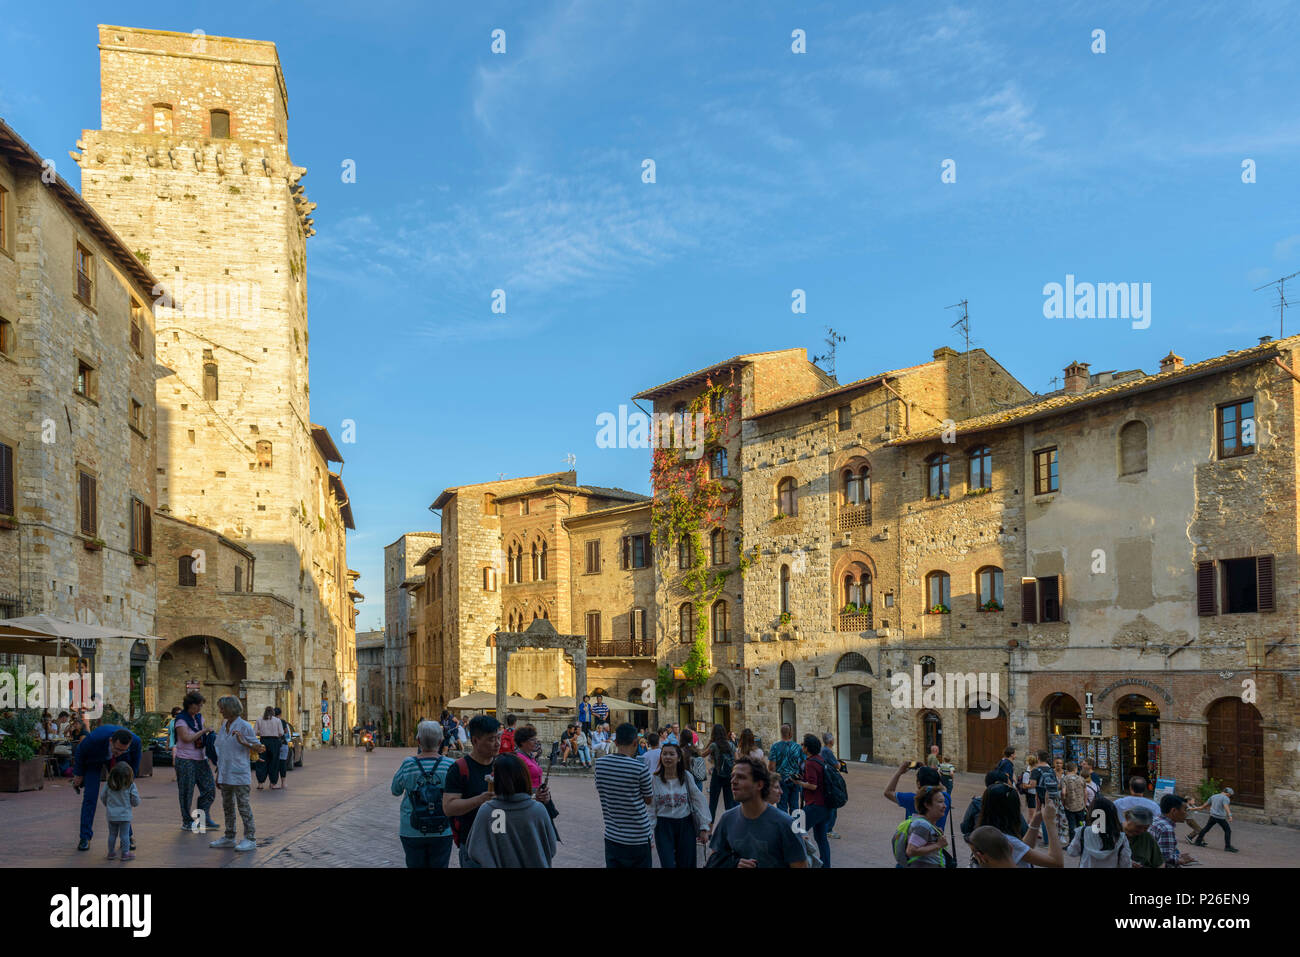 Les touristes sur la place de San Gimignano. Italie, Toscane, Sienne district. Banque D'Images